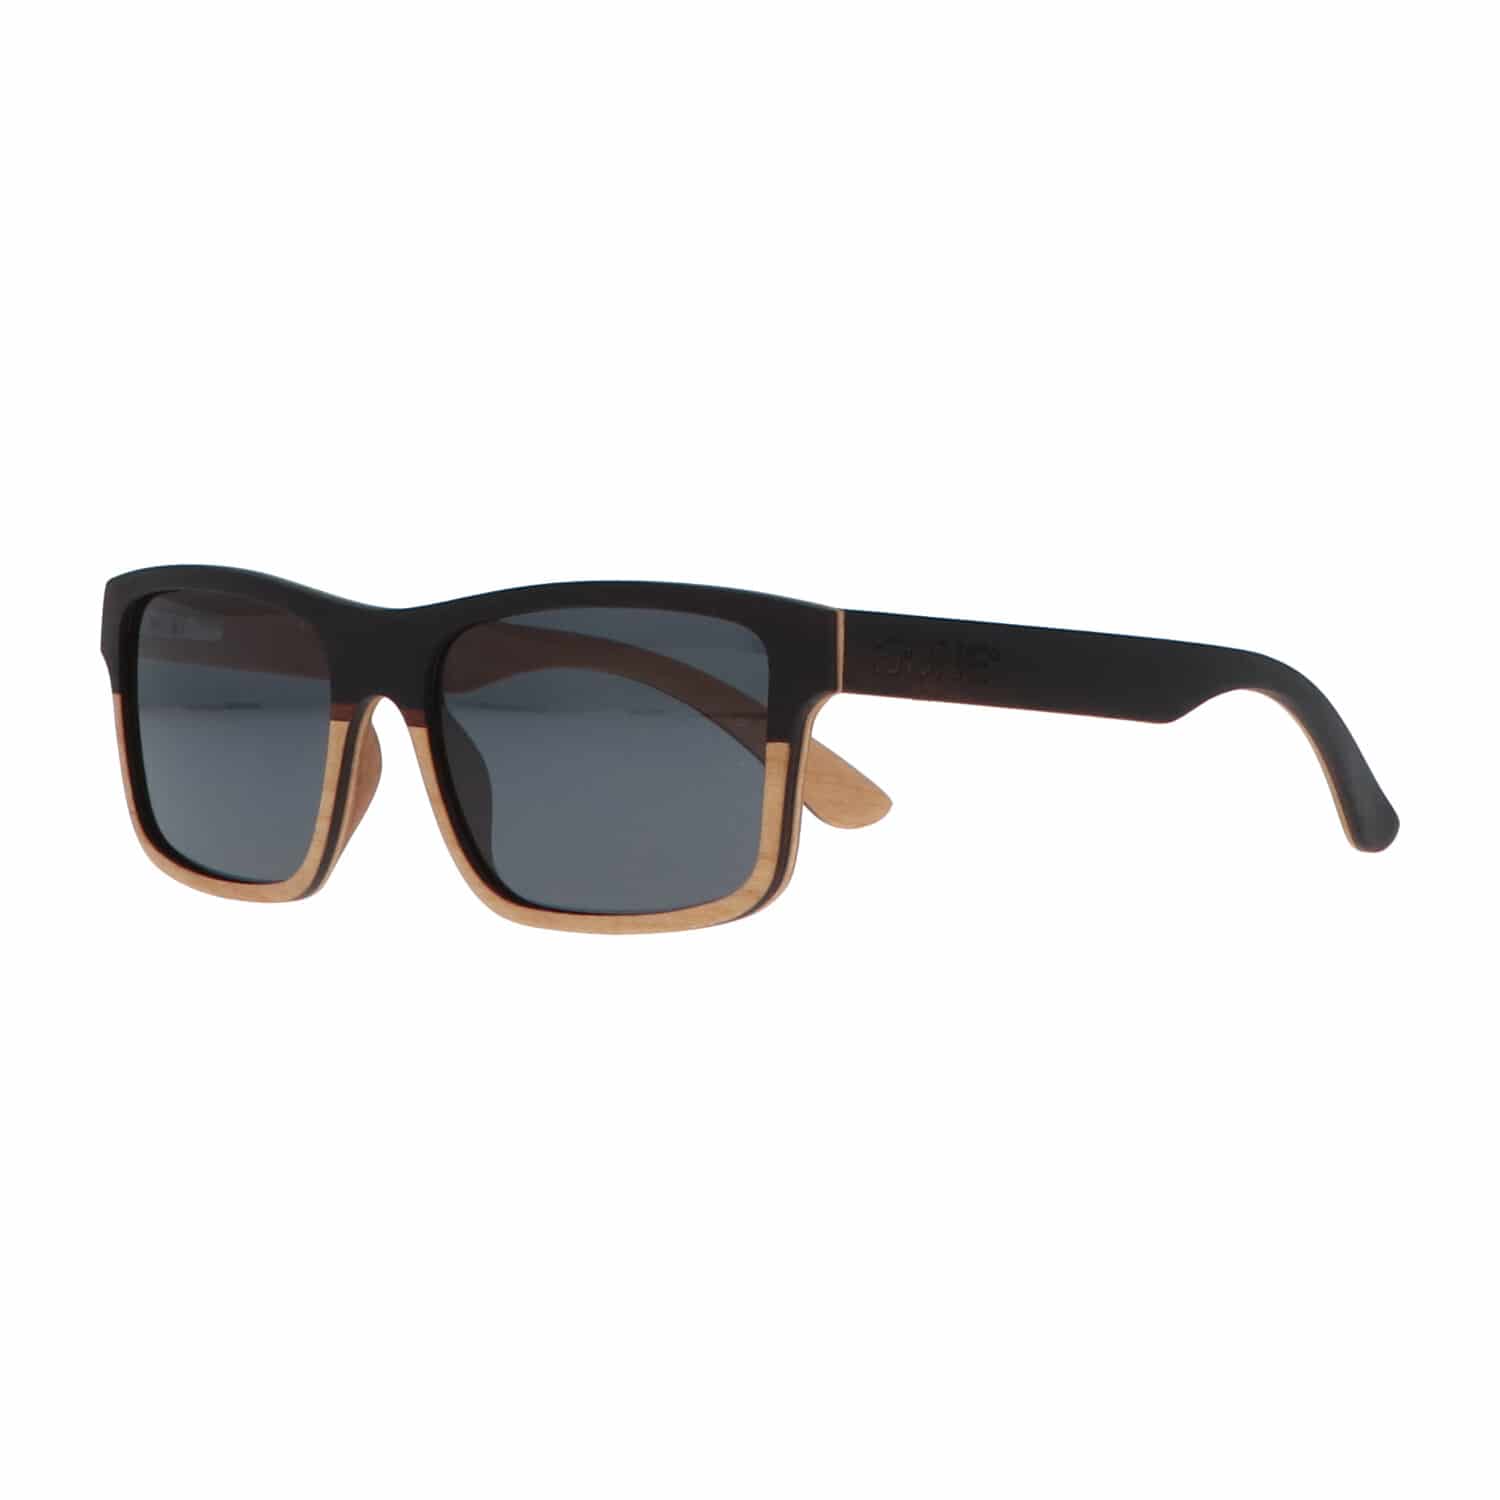 5one® Wayfarer 2-tone - Ebony met maple wood houten zonnebril - Grijs